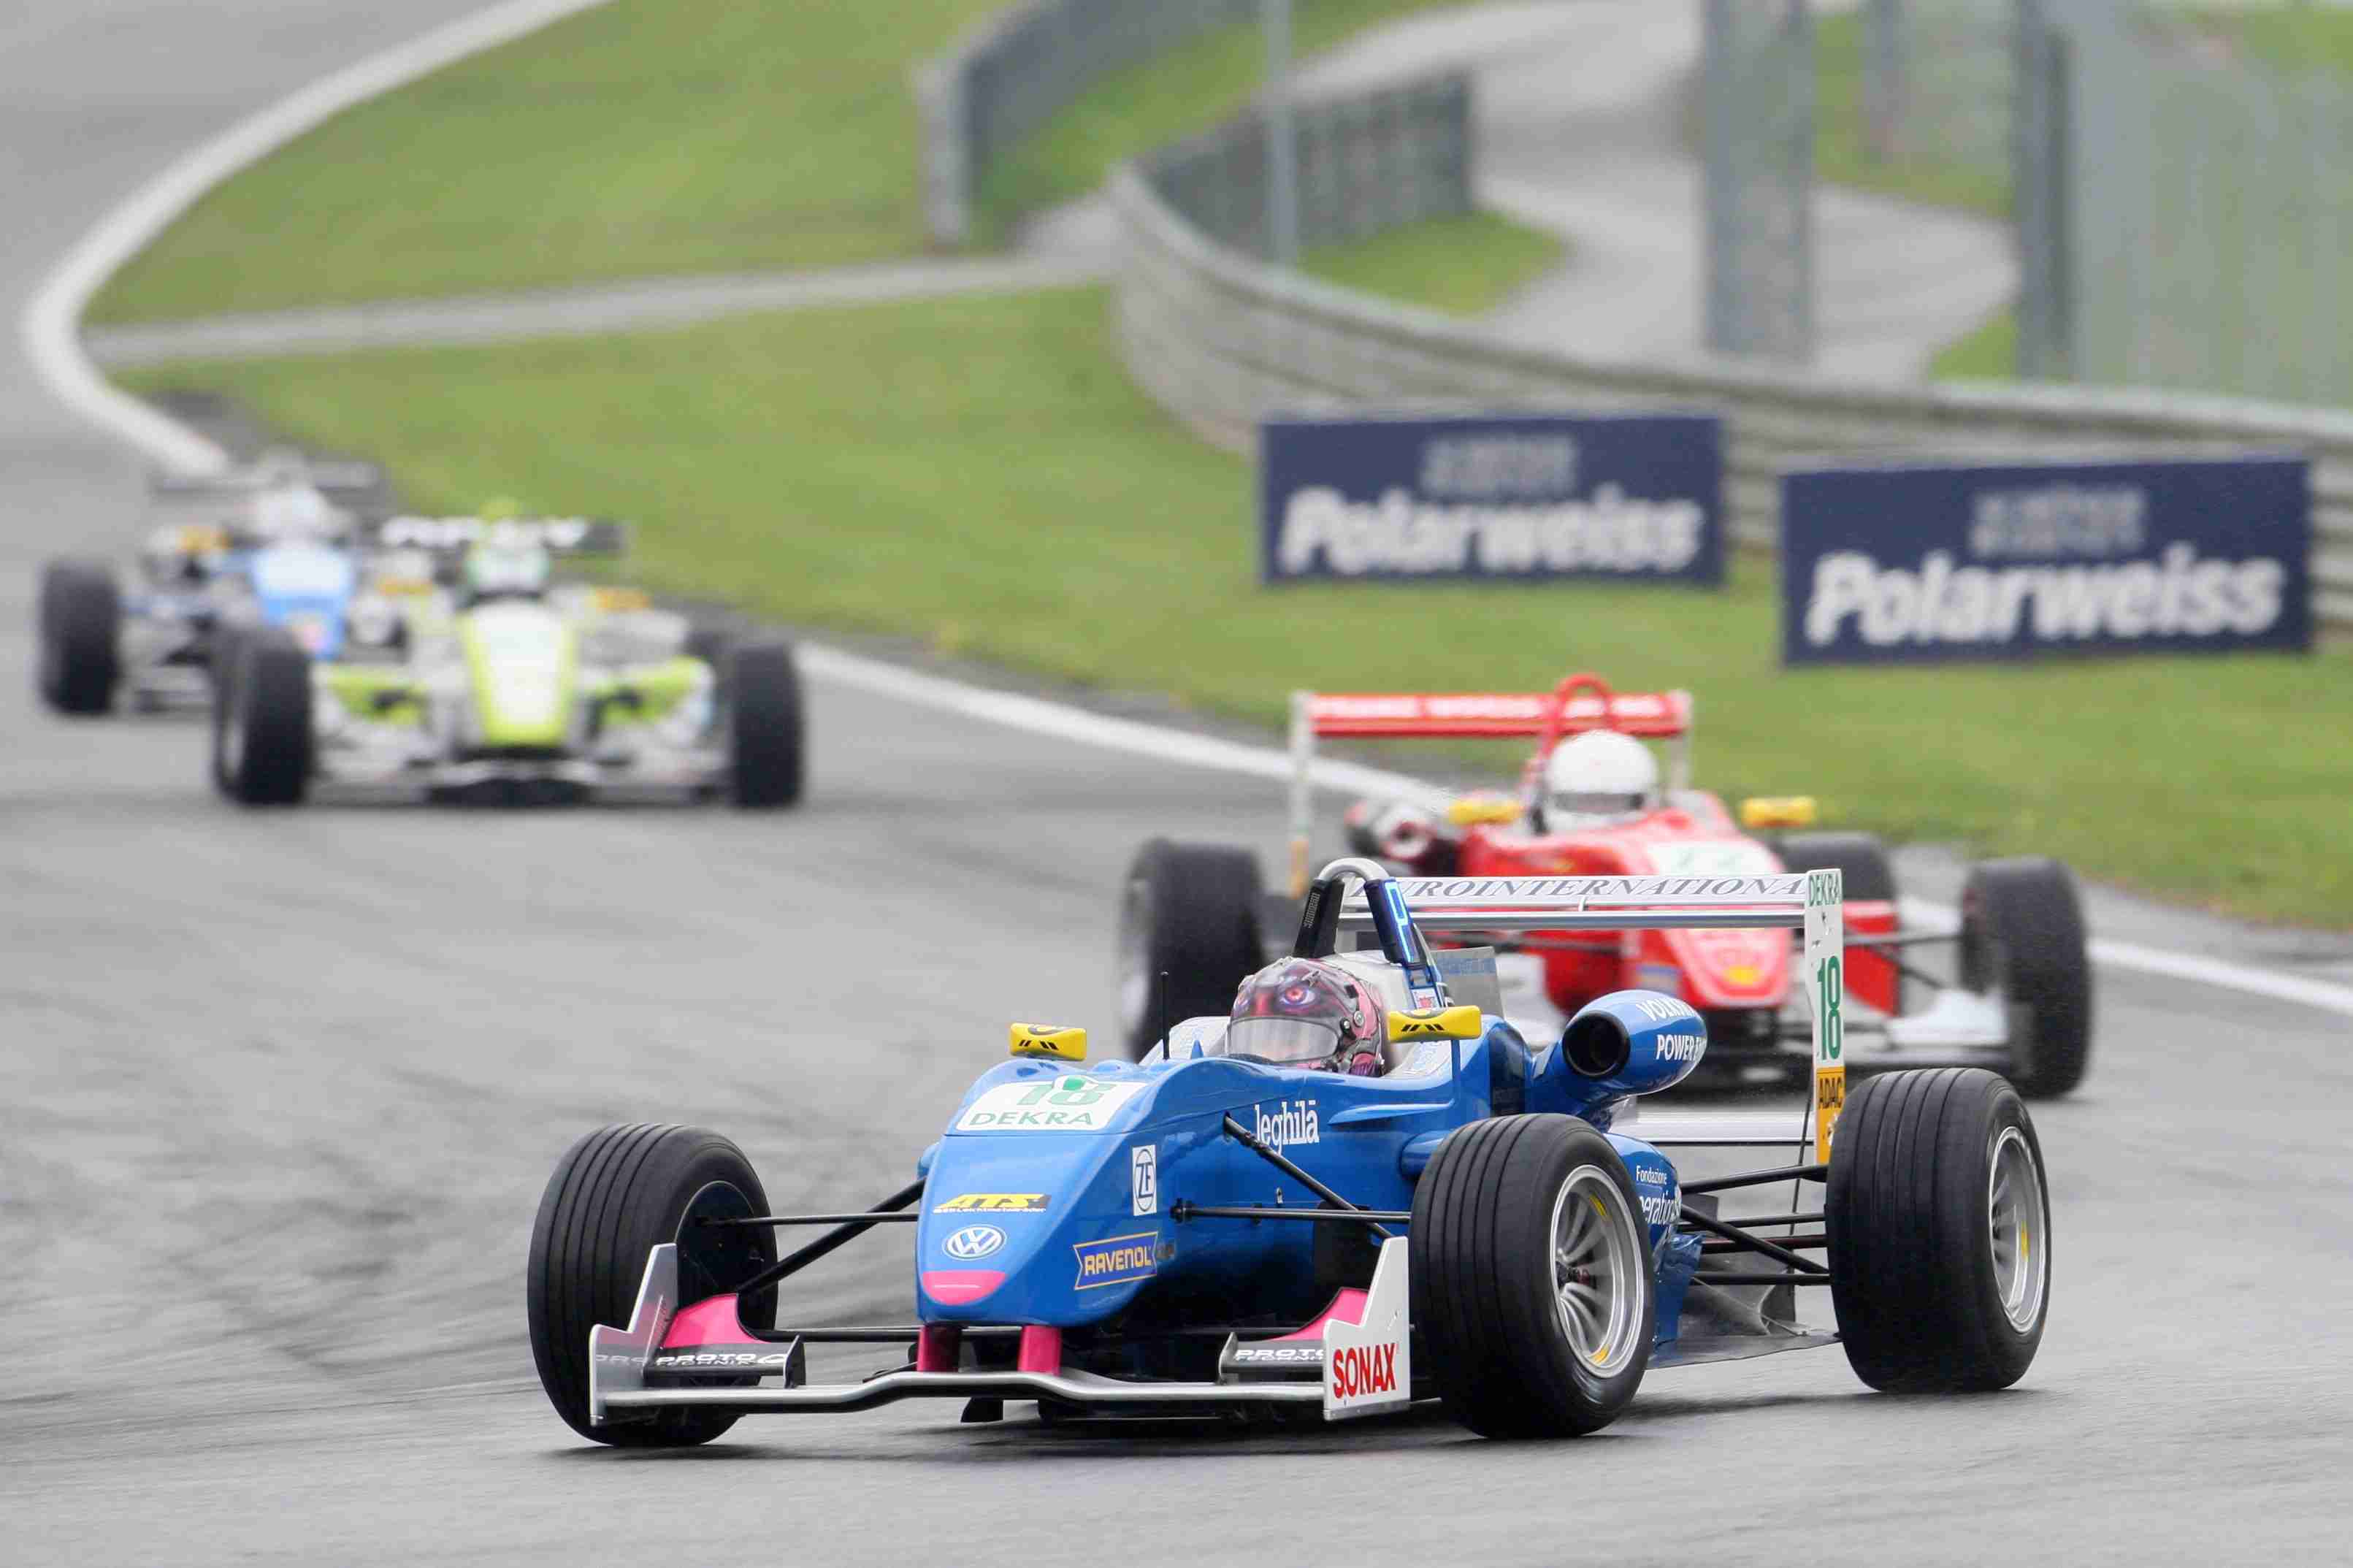 Automobilismo. Michela Cerruti conquista il 10° posto in Gara 3 nel Campionato tedesco di Formula 3 